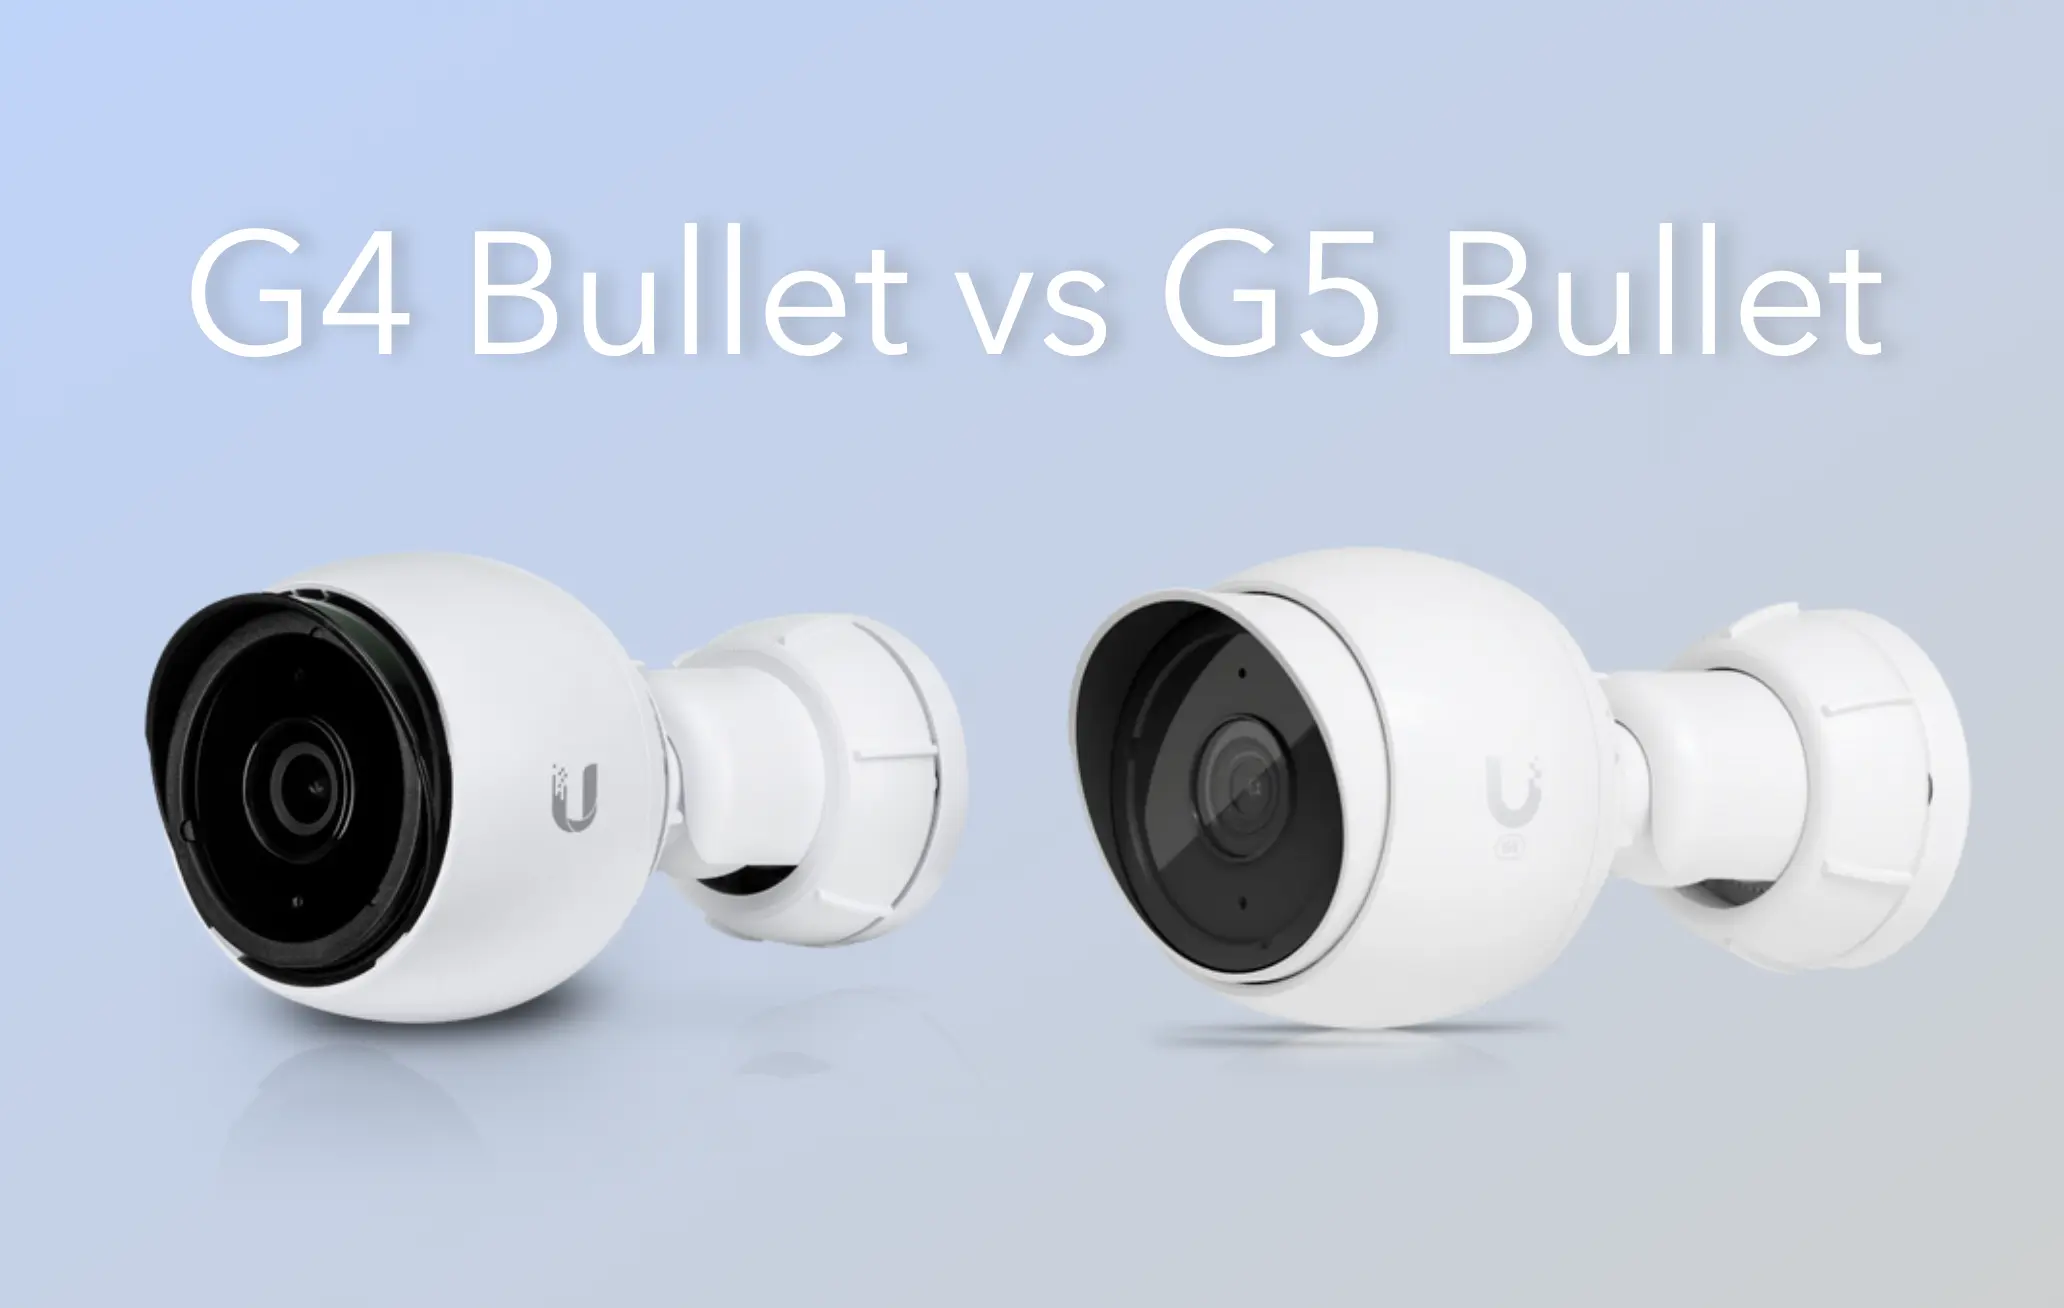 G4 bullet vs G5 bullet